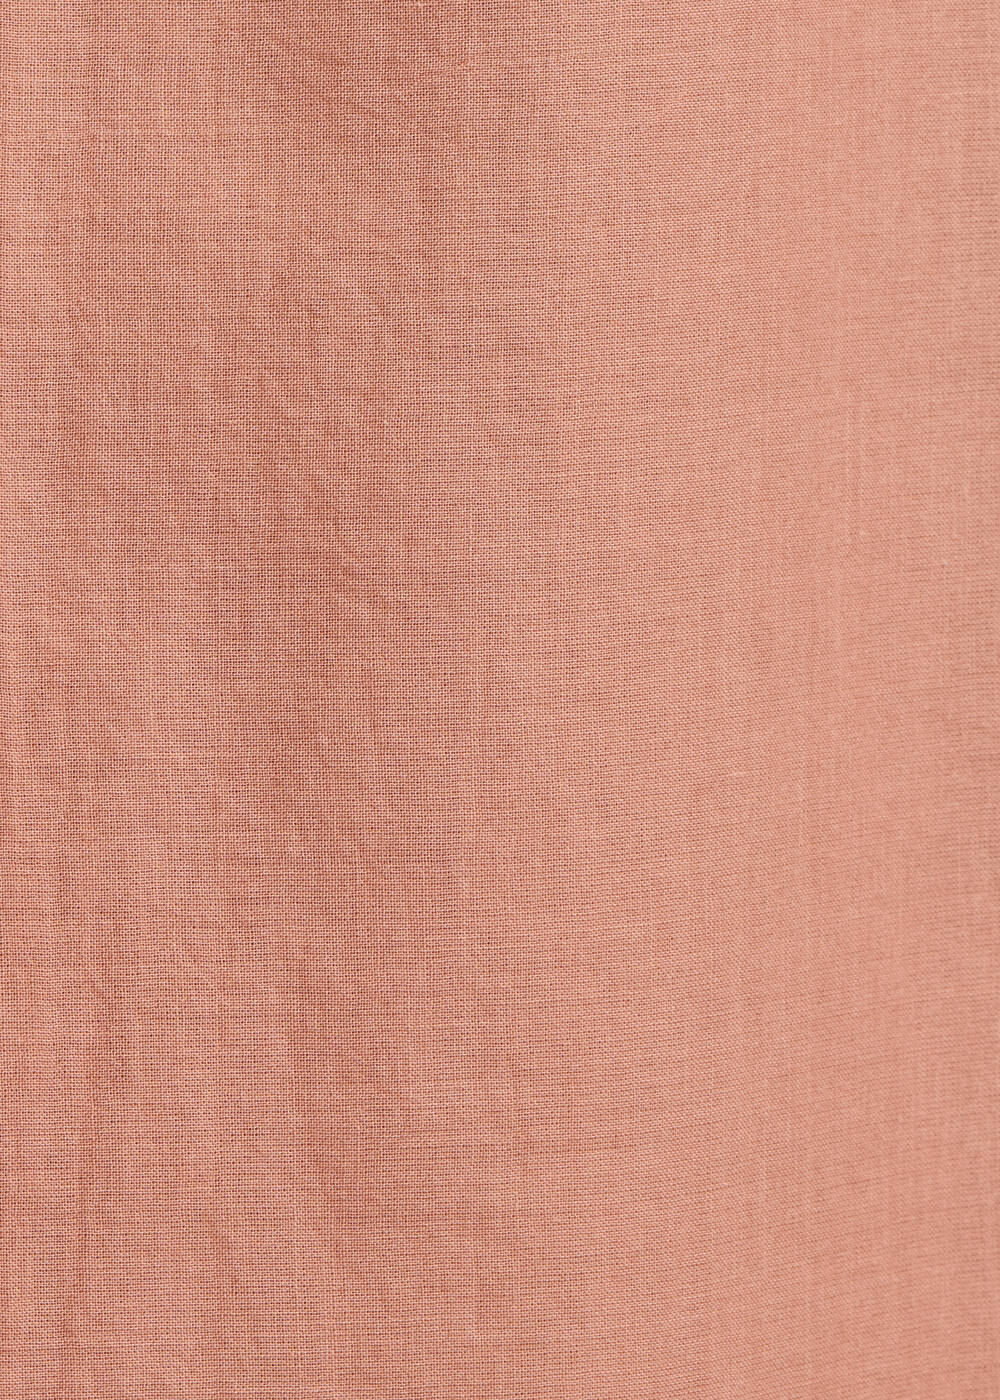 Jupe longue en voile de coton vieux rose - SORBET#couleur_SORBET